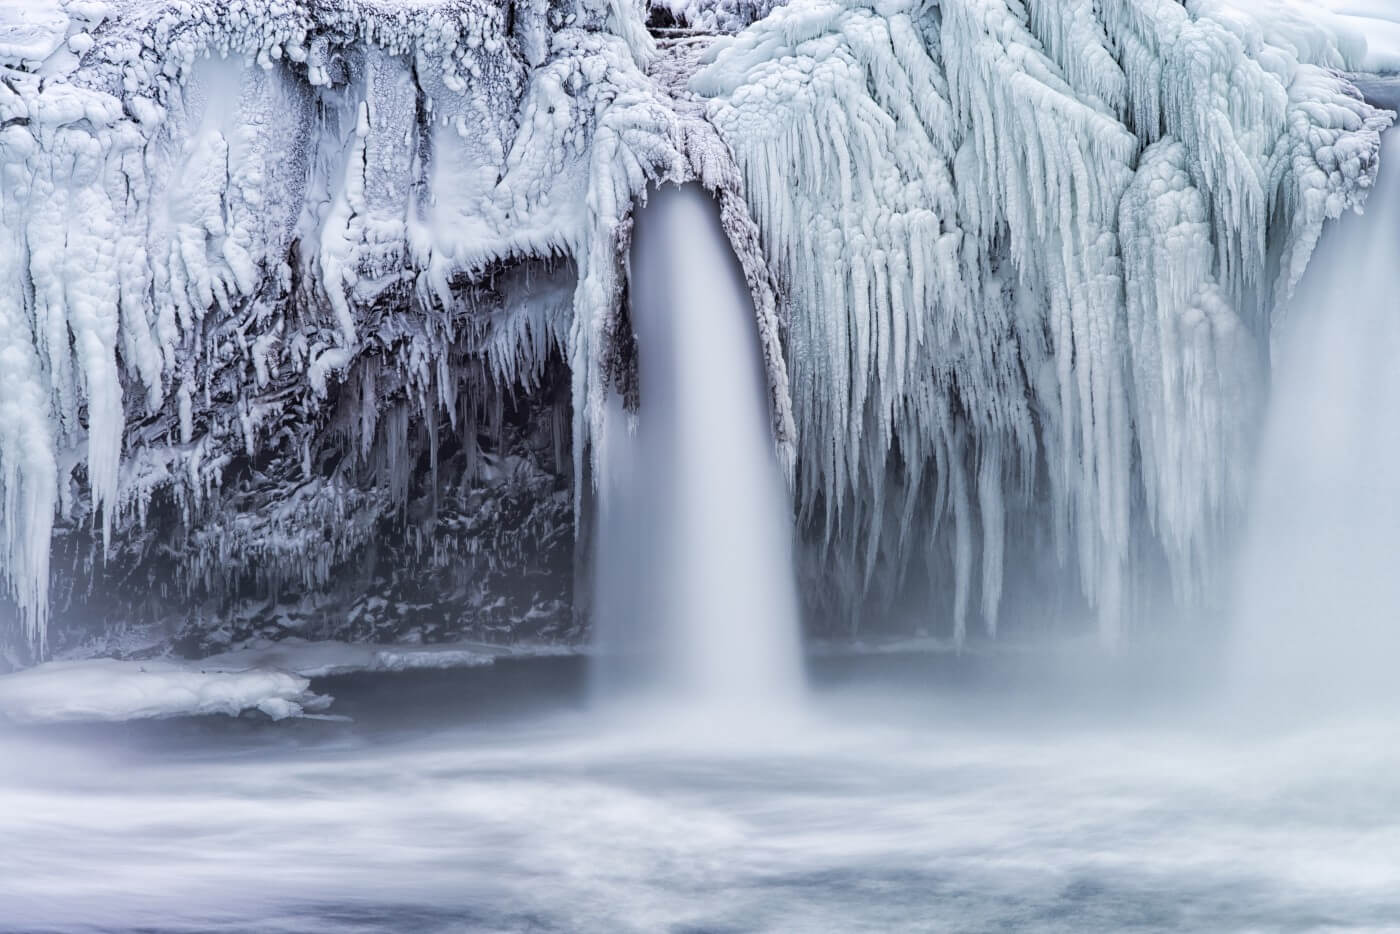 Frozen-Waterfall - Beaumont Capital Management